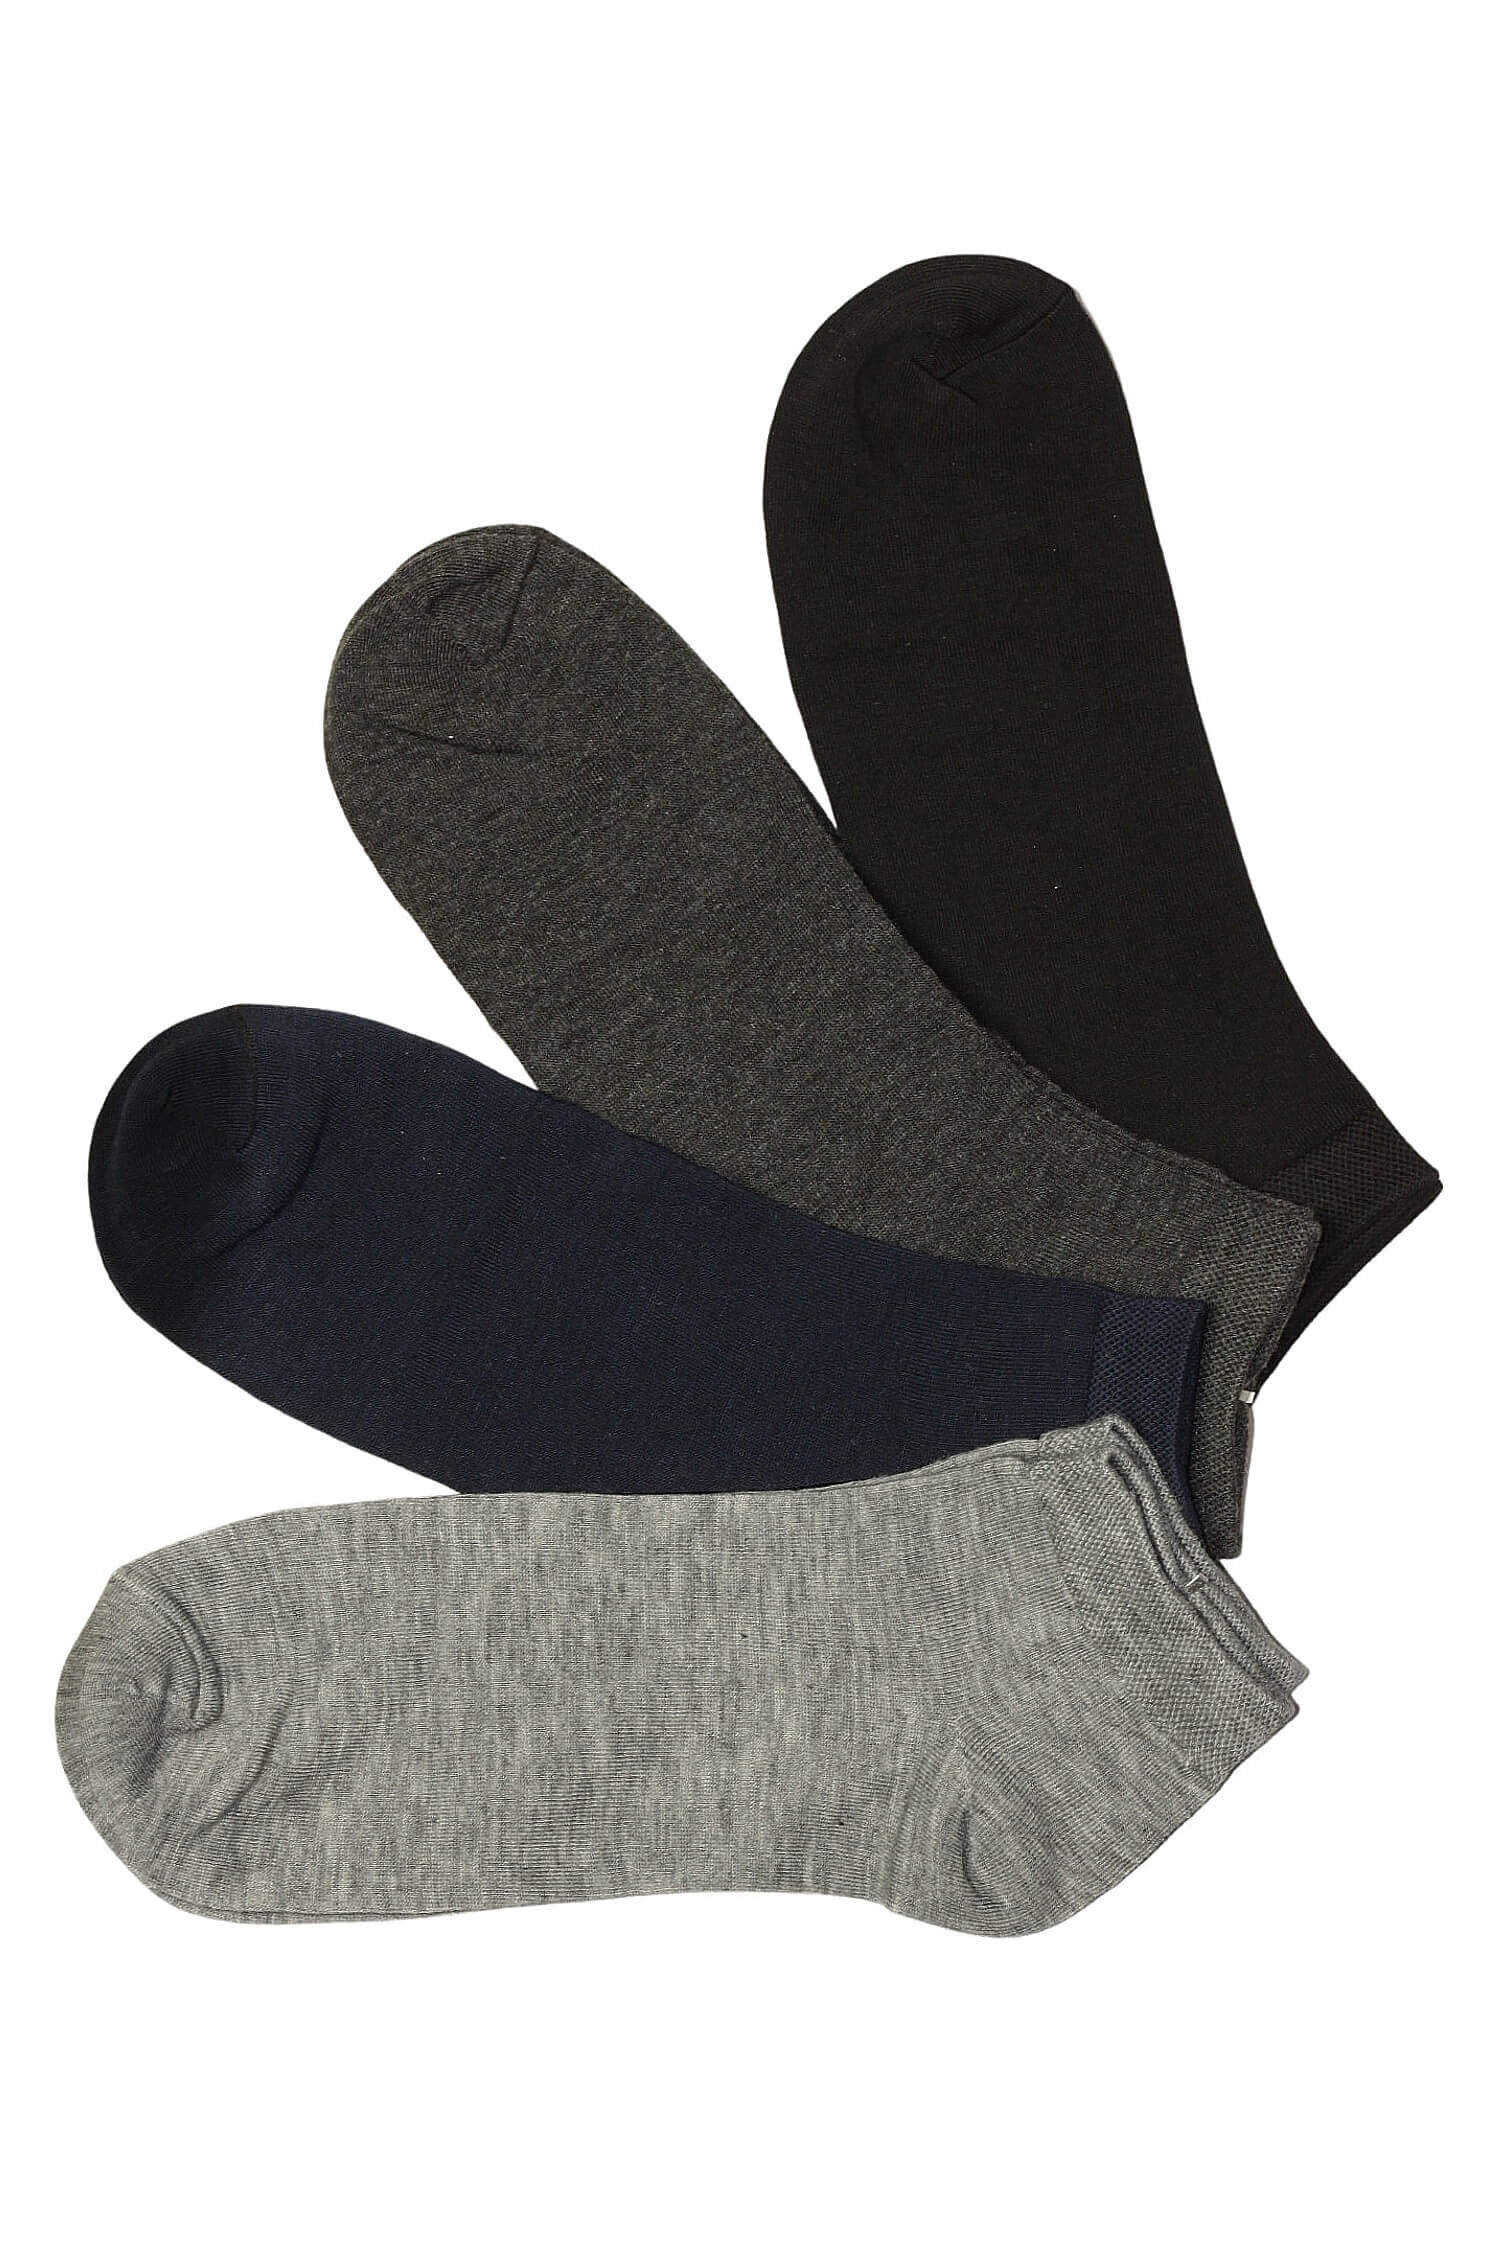 Pánské kotníčkové ponožky bavlna TM002B 3 páry 40-43 vícebarevná